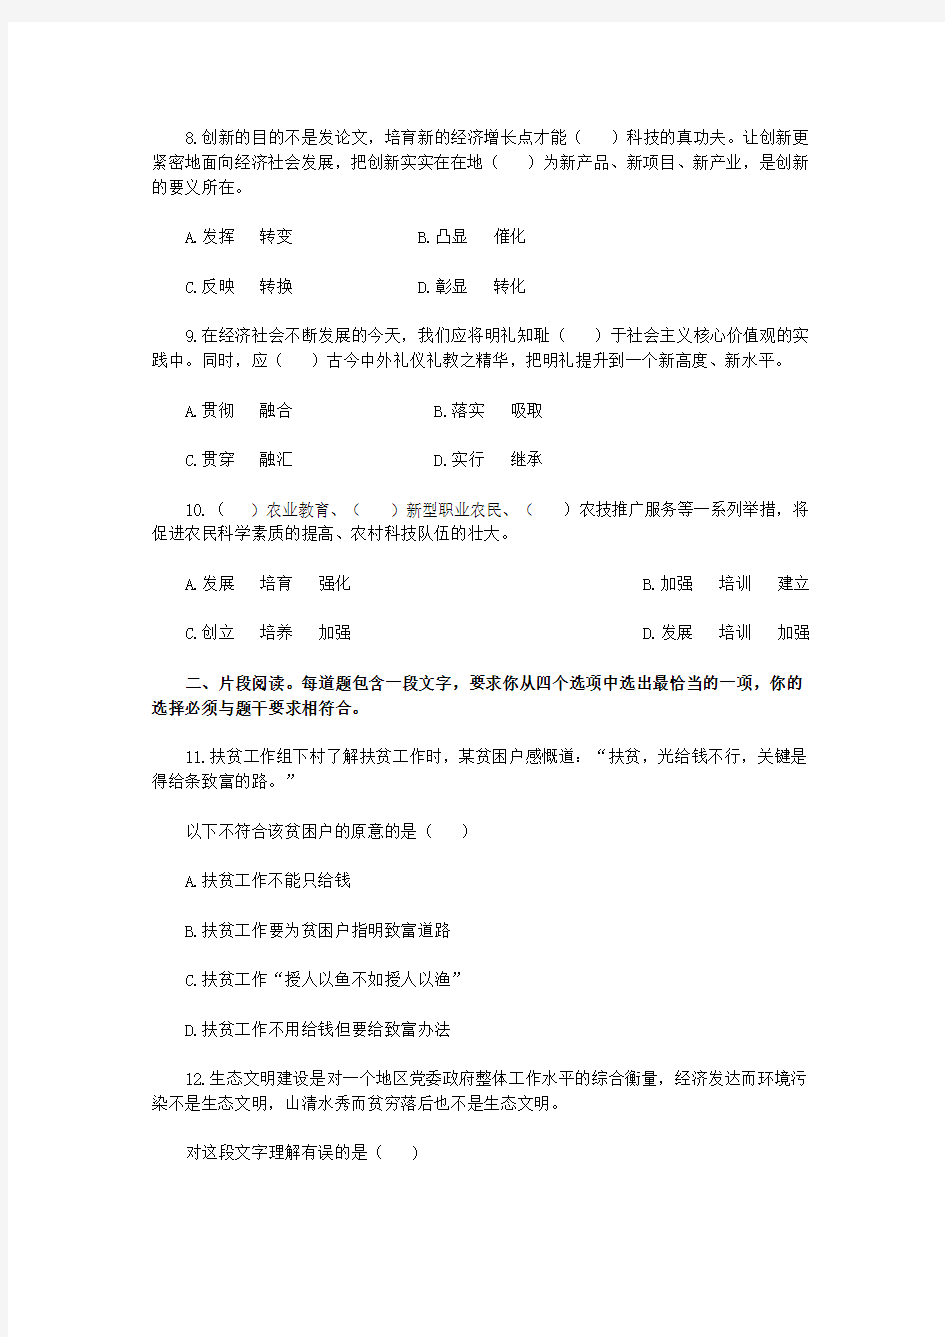 2016年广东省公务员考试乡镇行测真题答案及解析(完整)